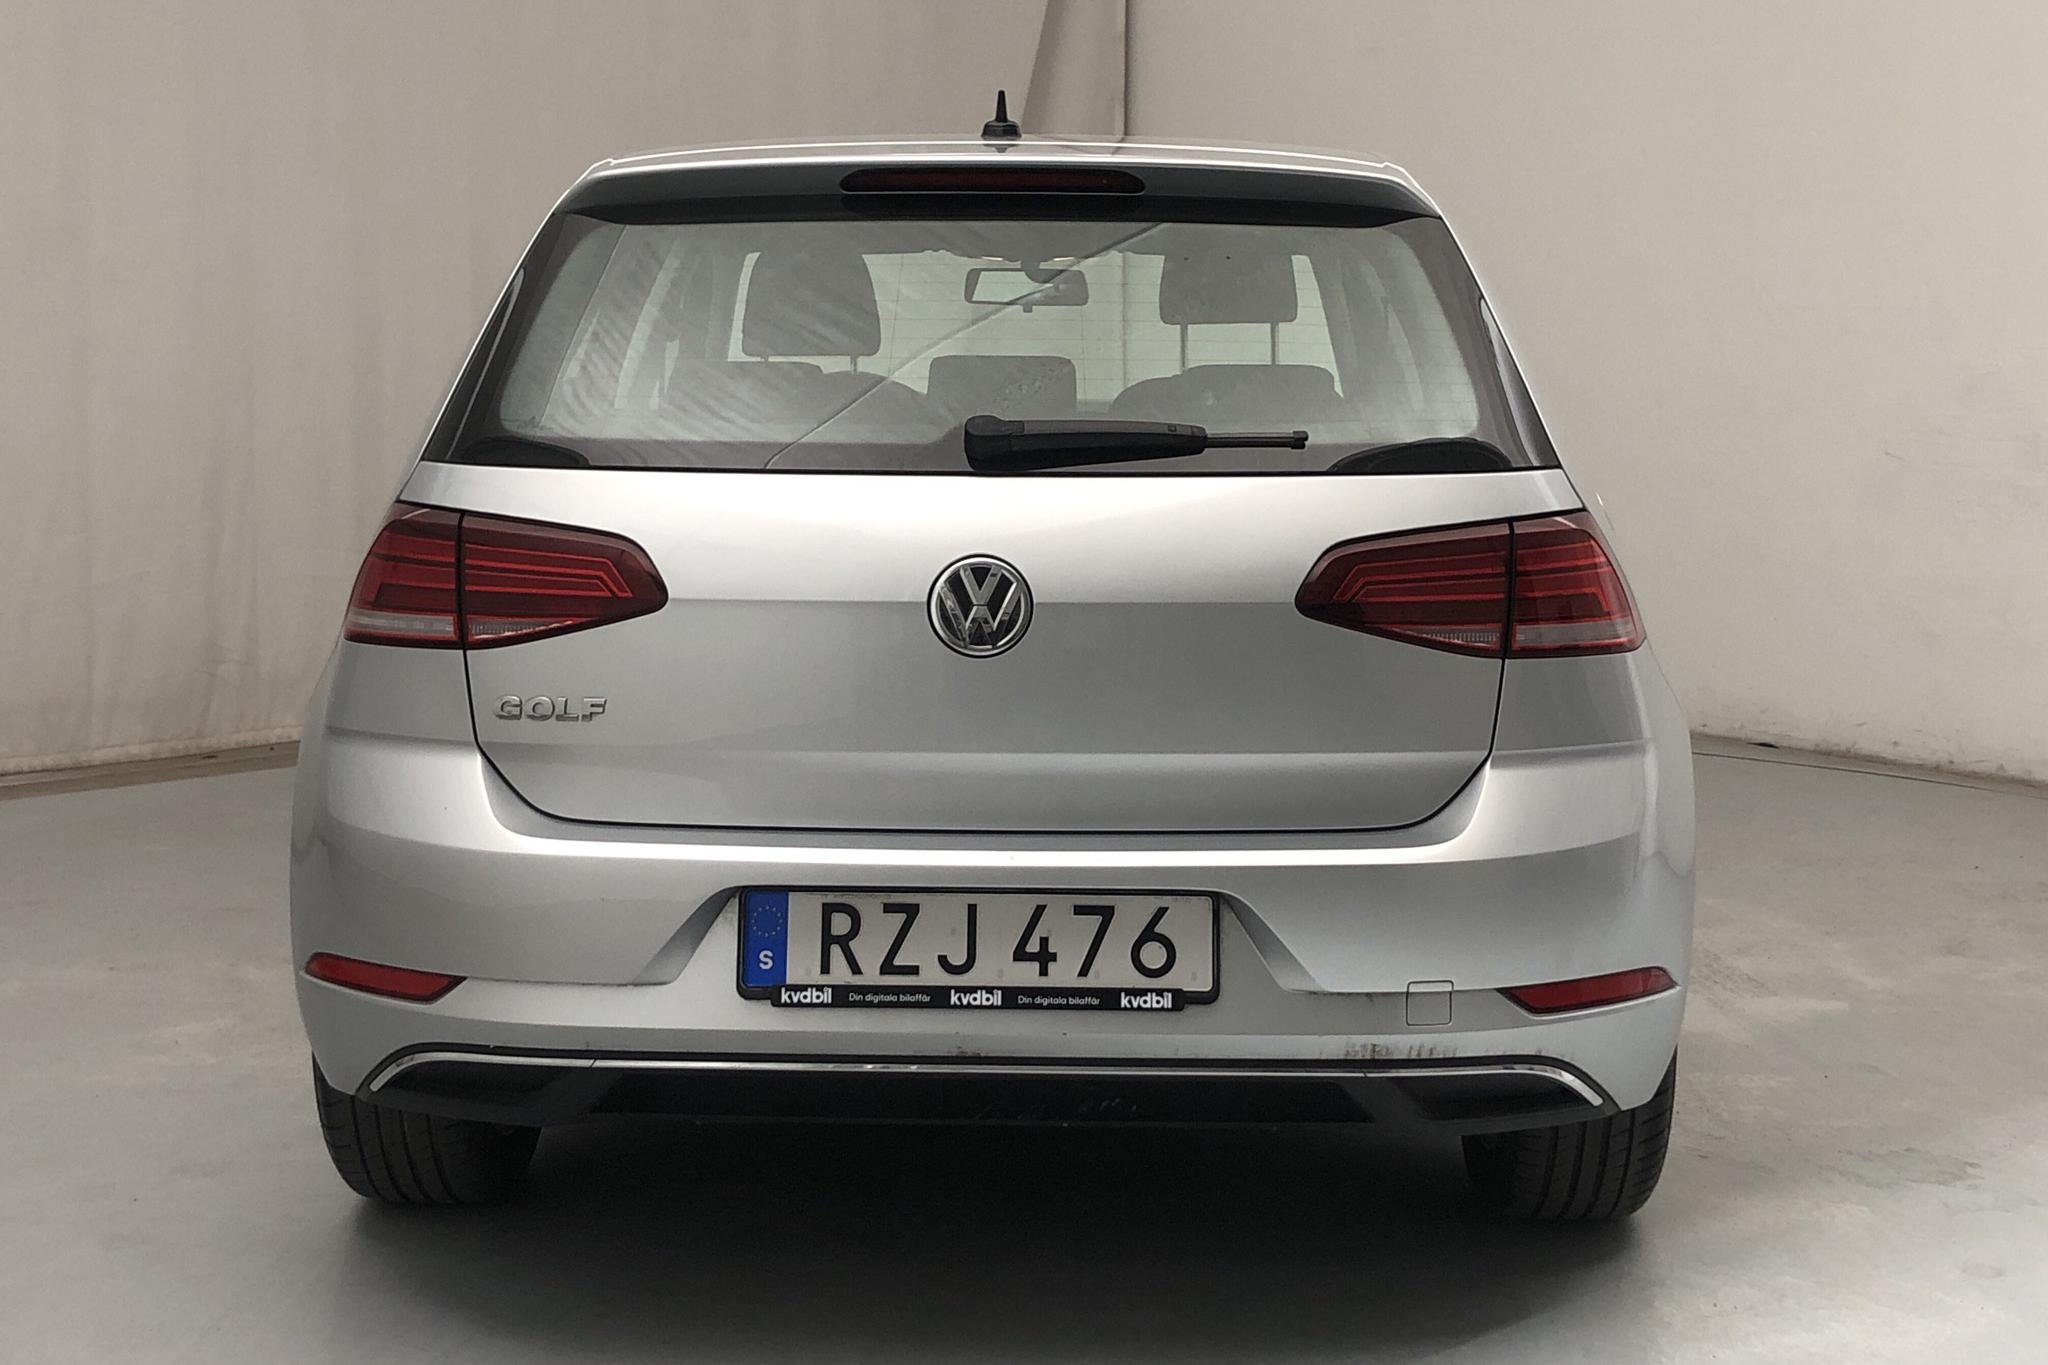 VW Golf VII 1.0 TSI 5dr (115hk) - 48 740 km - Manual - silver - 2019